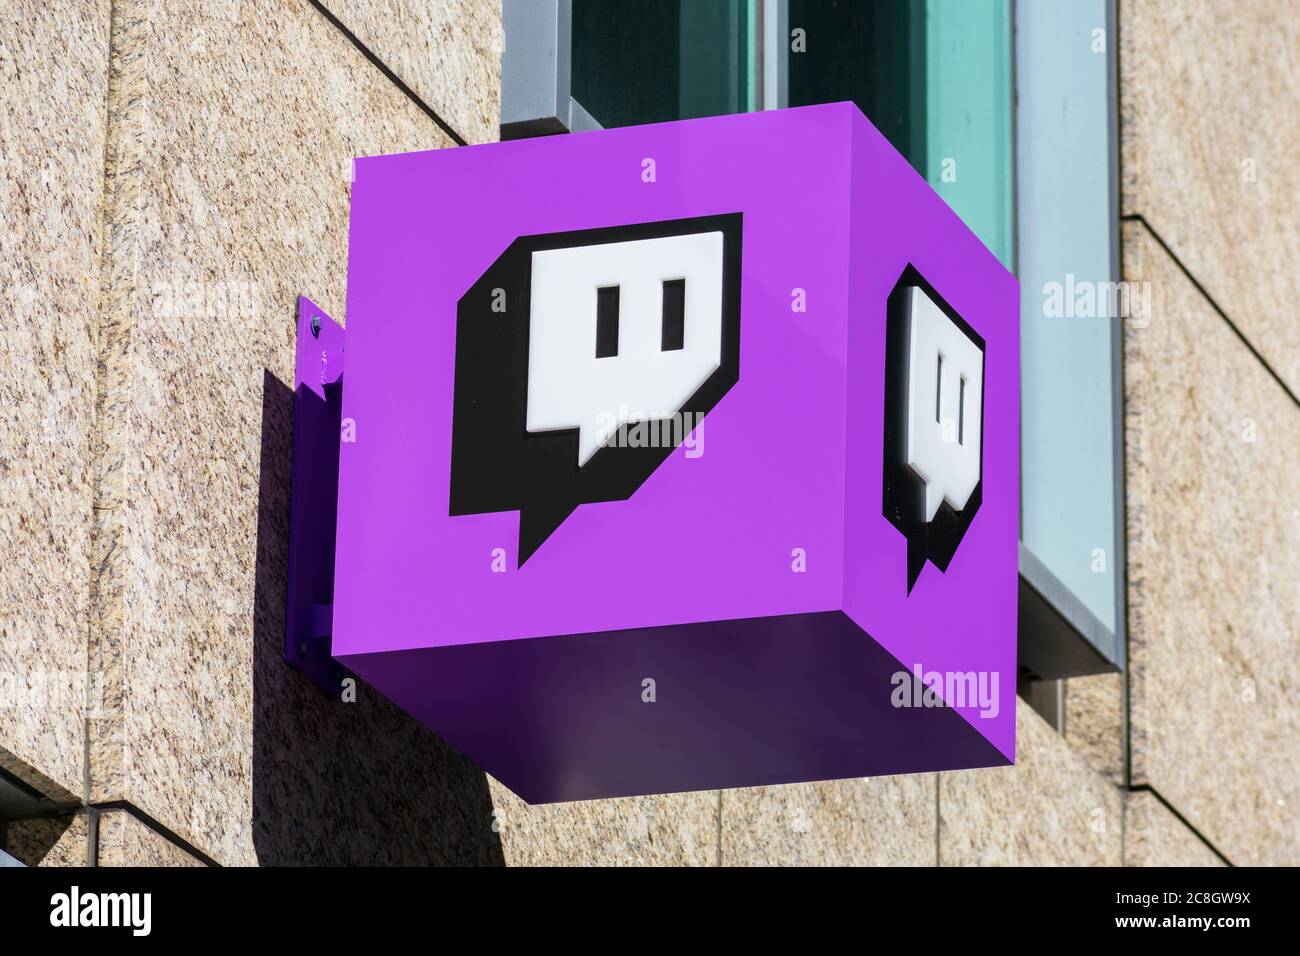 Twitch unterzeichnet am Hauptsitz des Unternehmens im Silicon Valley. Twitch ist eine Live-Streaming-Video-Plattform im Besitz von Twitch Interactive, einer Tochtergesellschaft von Amazon - Stockfoto